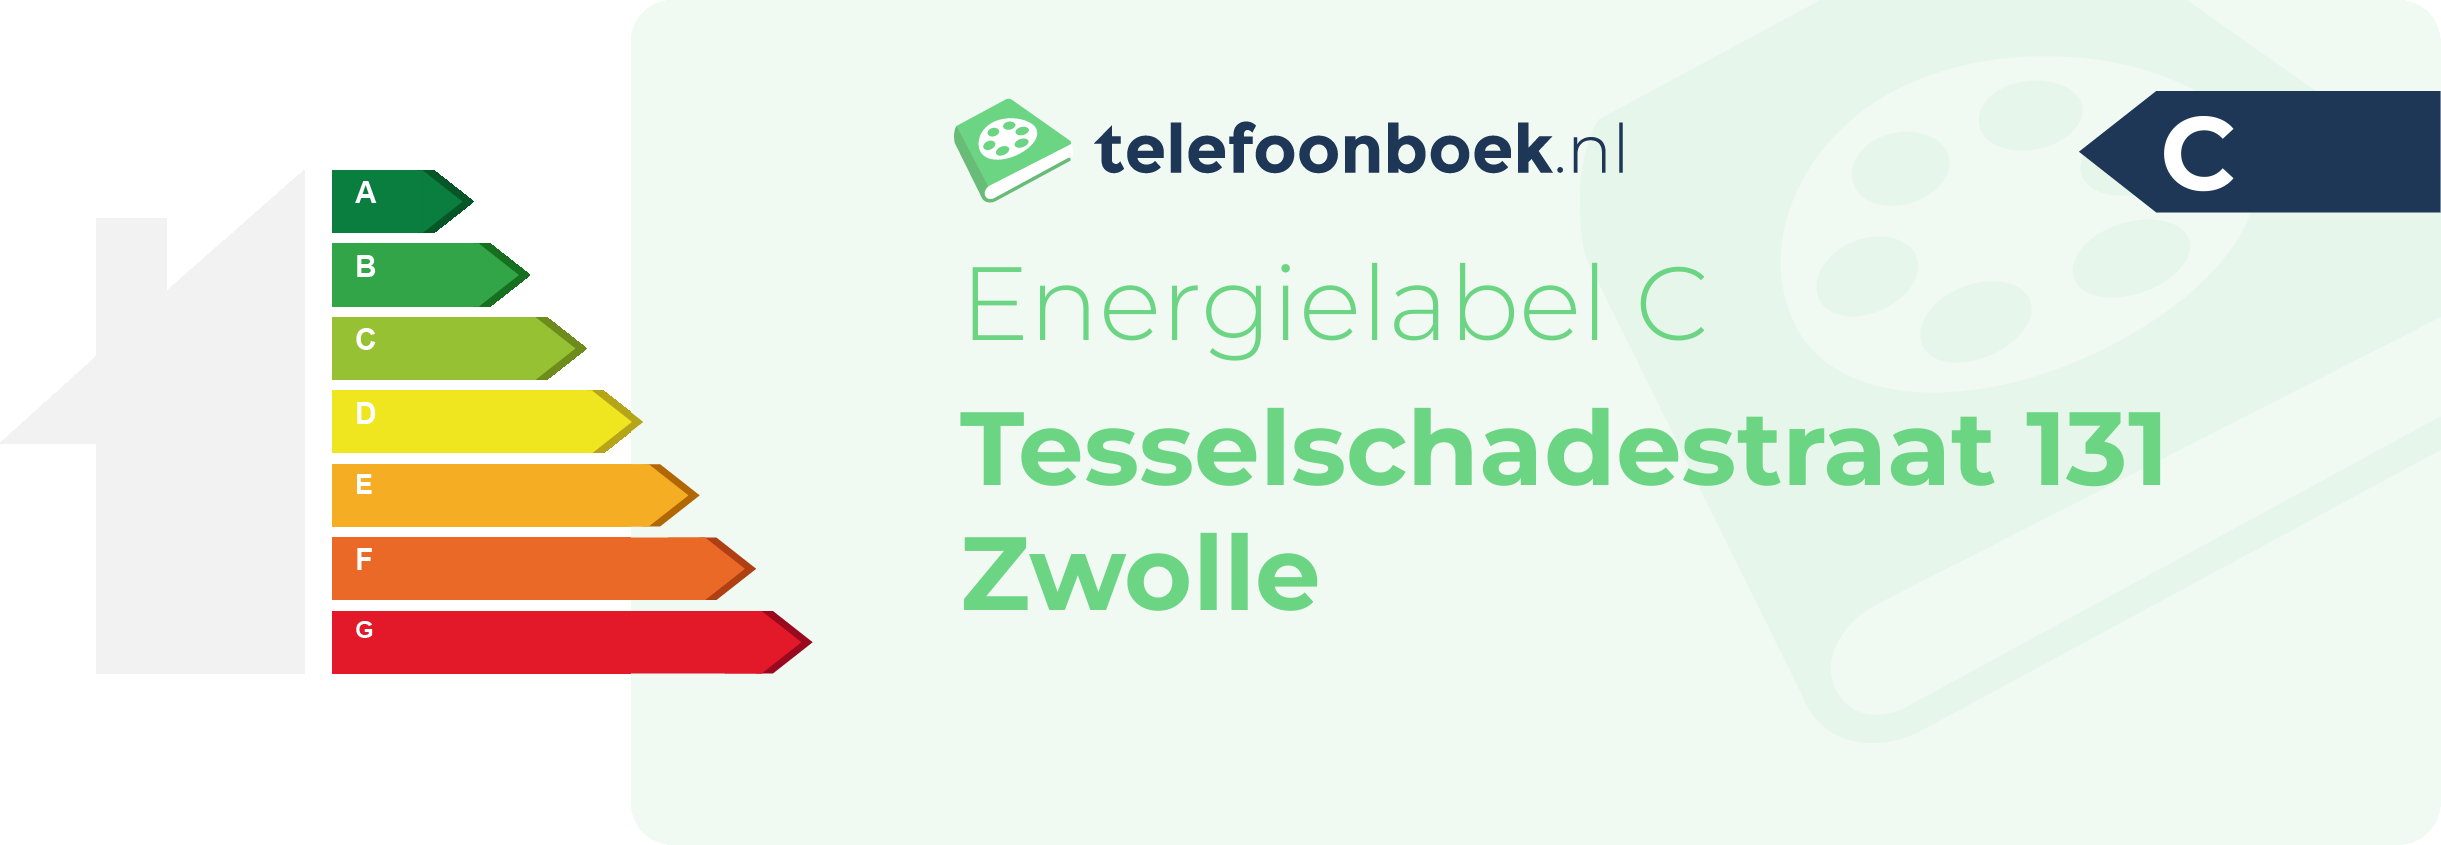 Energielabel Tesselschadestraat 131 Zwolle